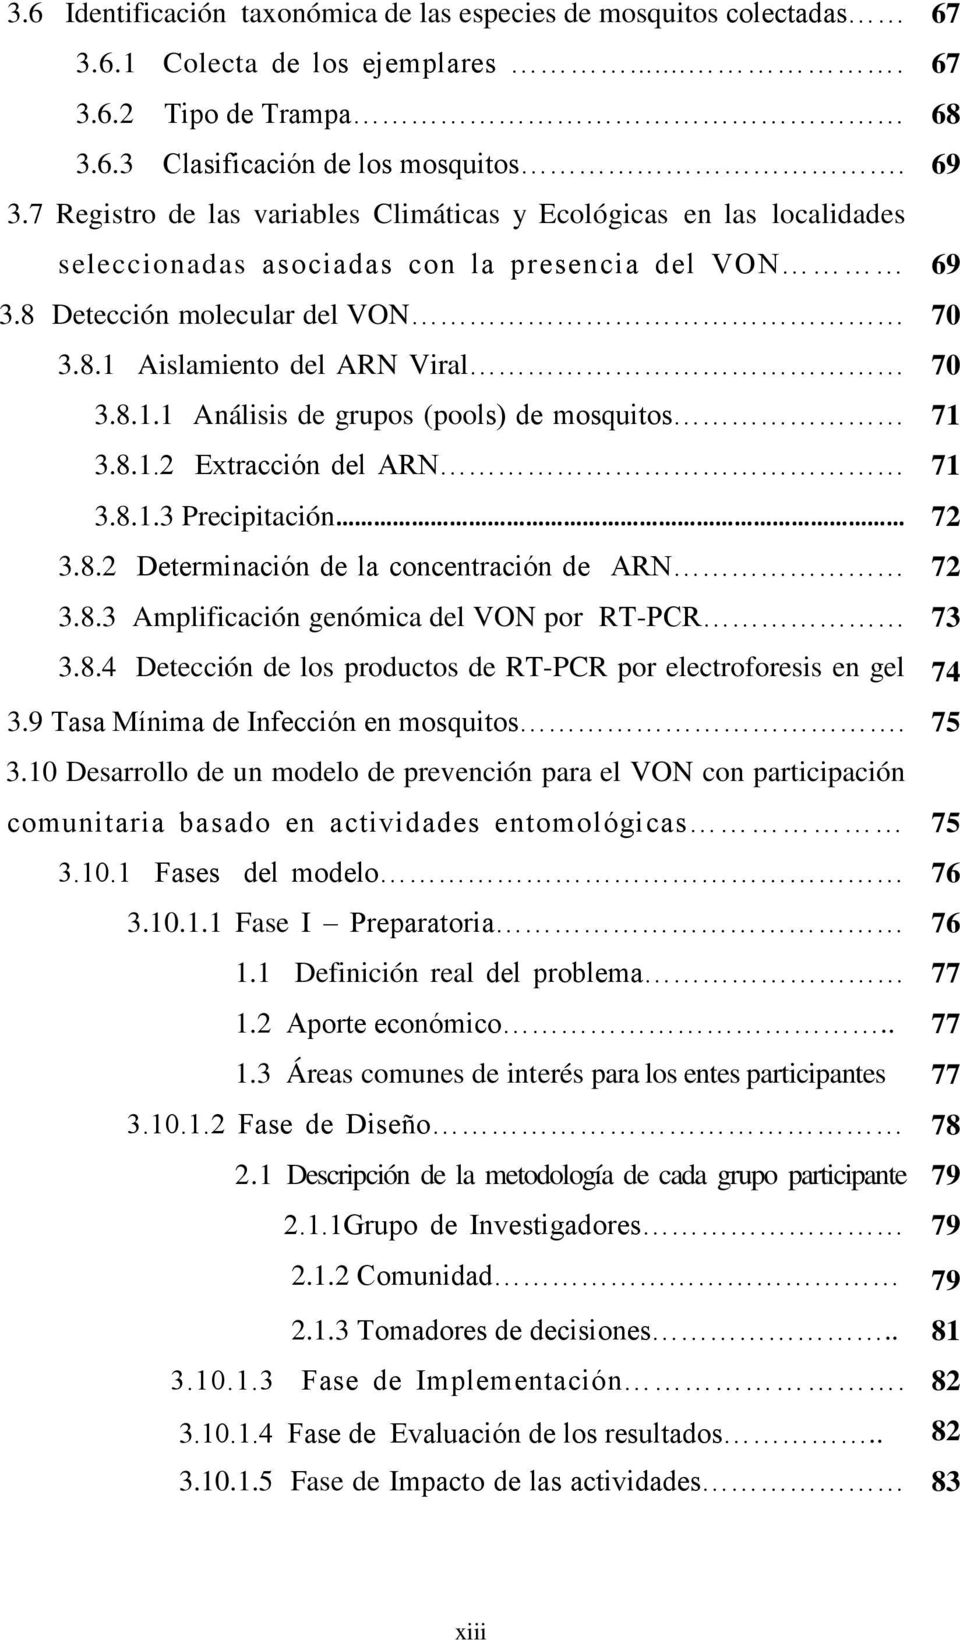 Aislamiento del ARN Viral 70 3.8.1.1 Análisis de grupos (pools) de mosquitos 71 3.8.1.2 Extracción del ARN 71 3.8.1.3 Precipitación 72 3.8.2 Determinación de la concentración de ARN 72 3.8.3 Amplificación genómica del VON por RT-PCR 73 3.